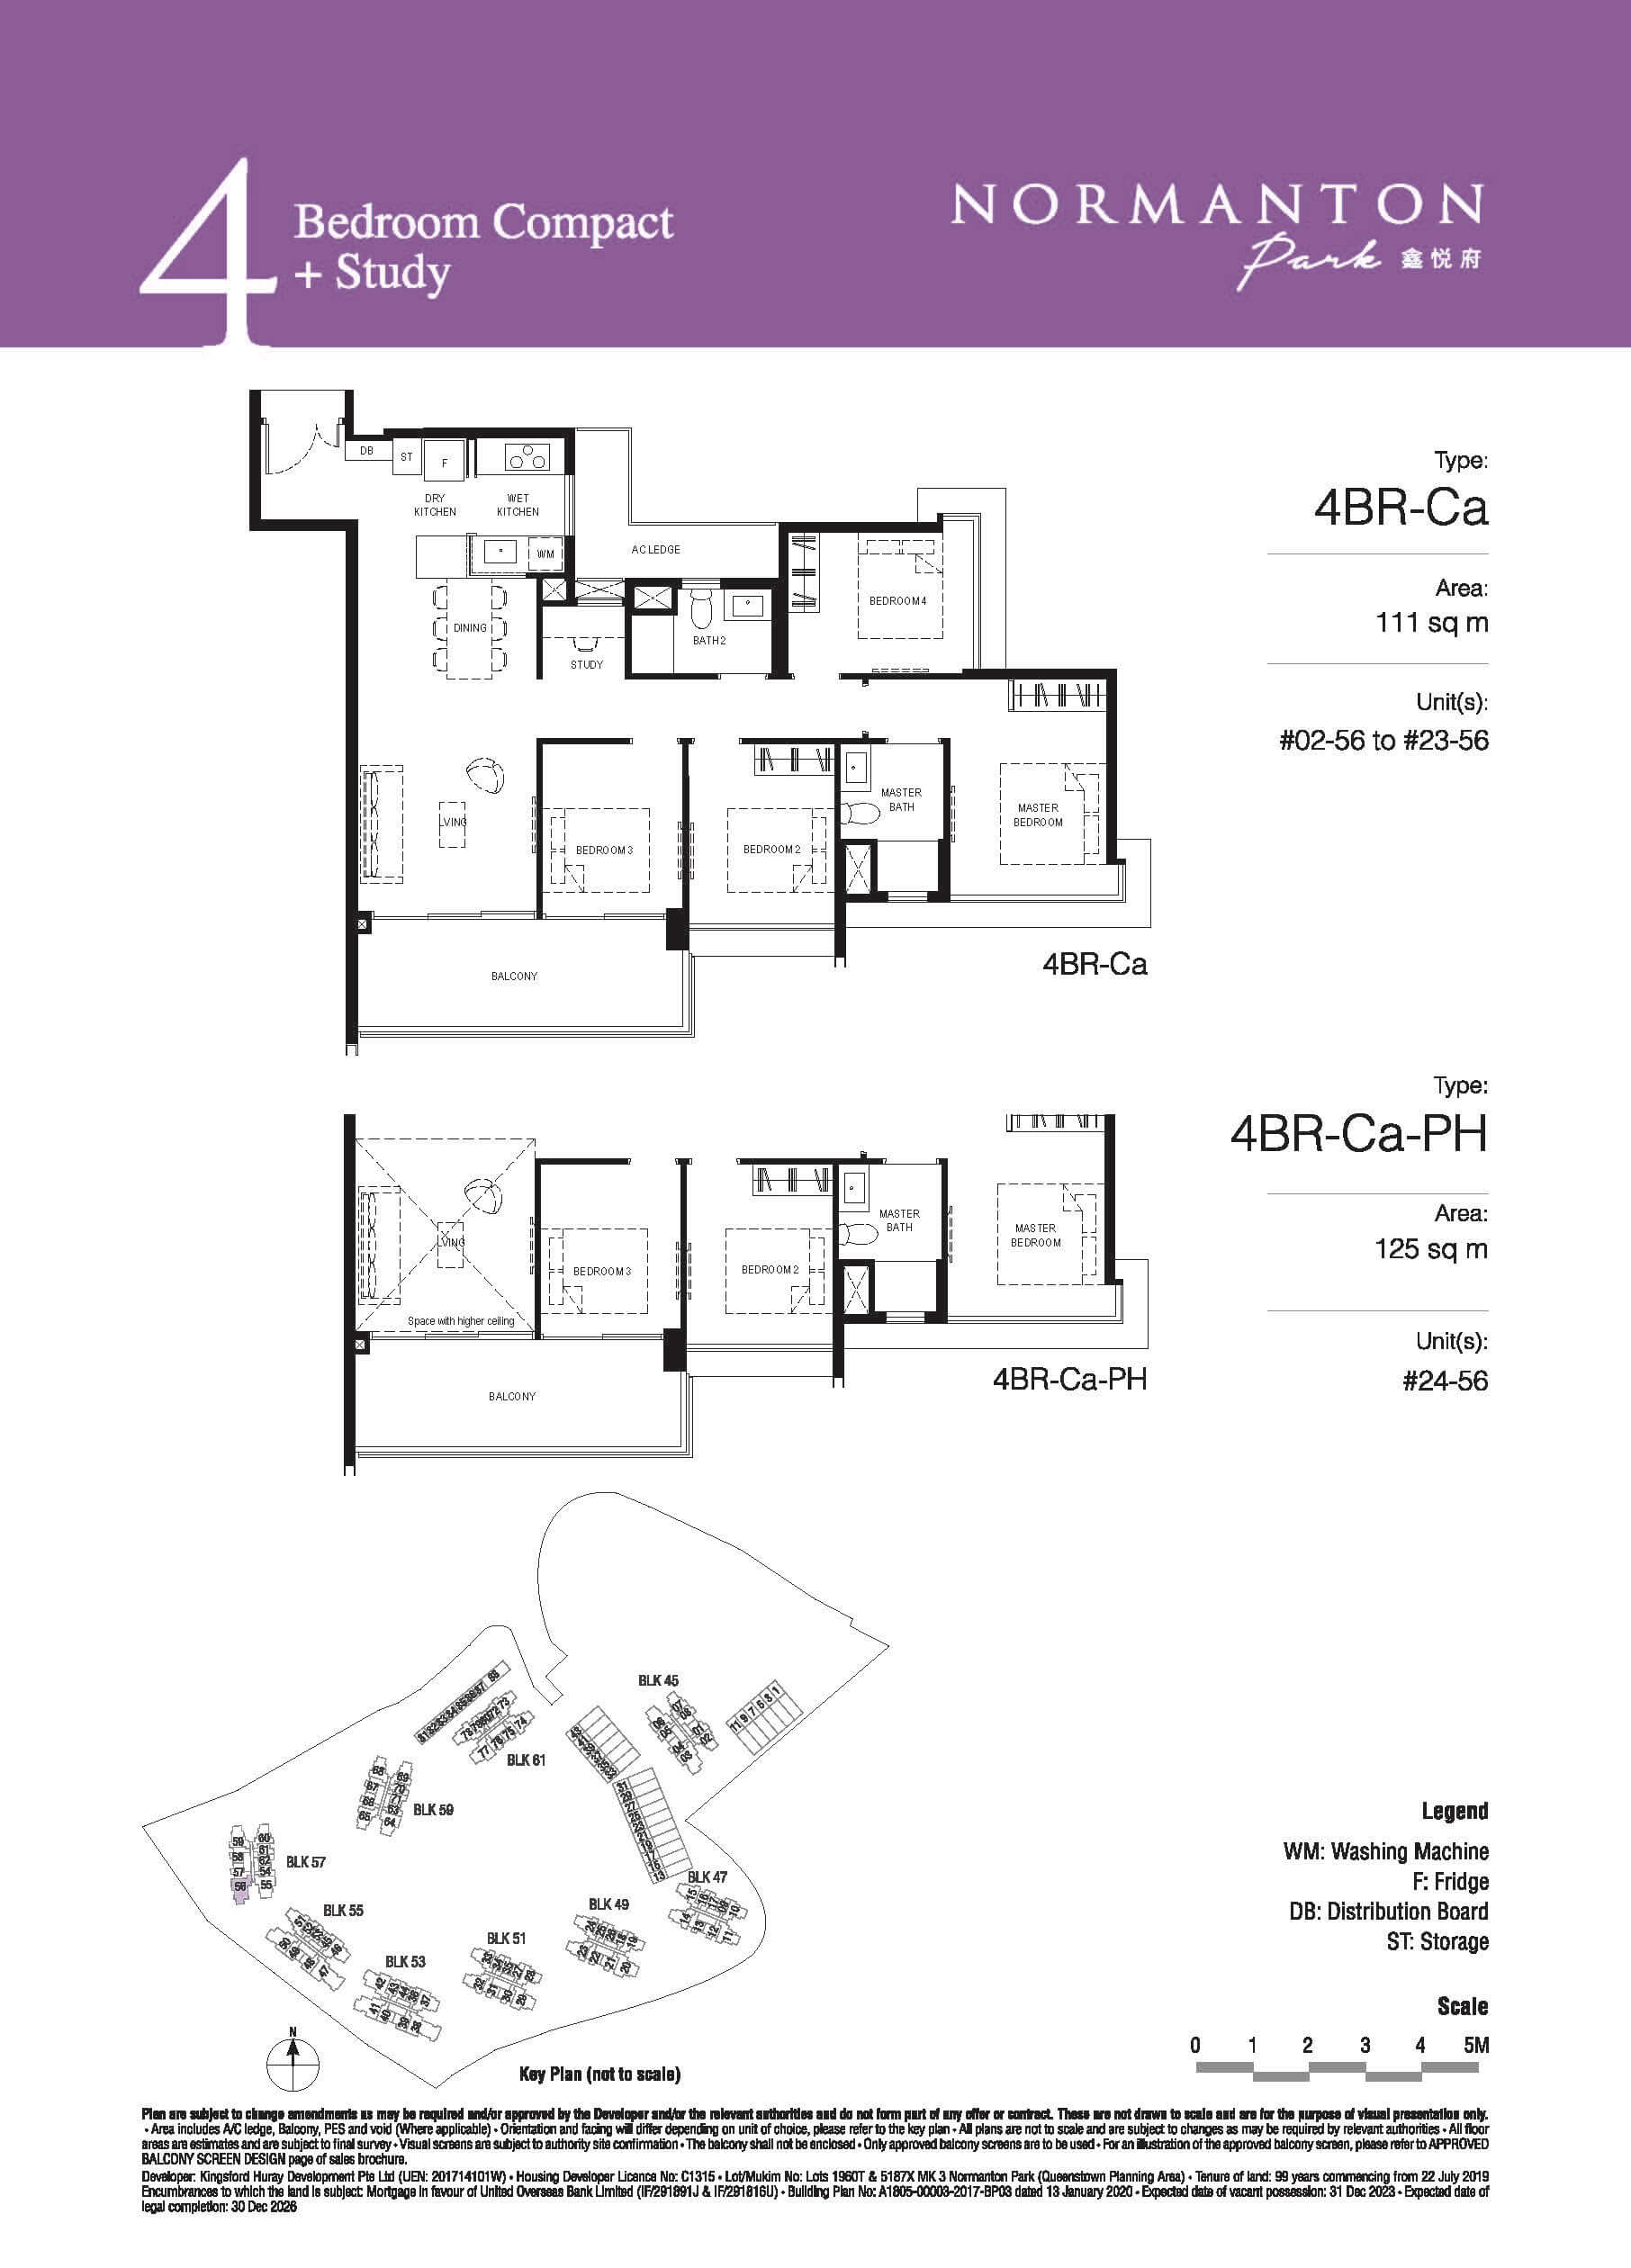 Normanton Park Floor Plan 4-Bedroom Compact Study Type Ca